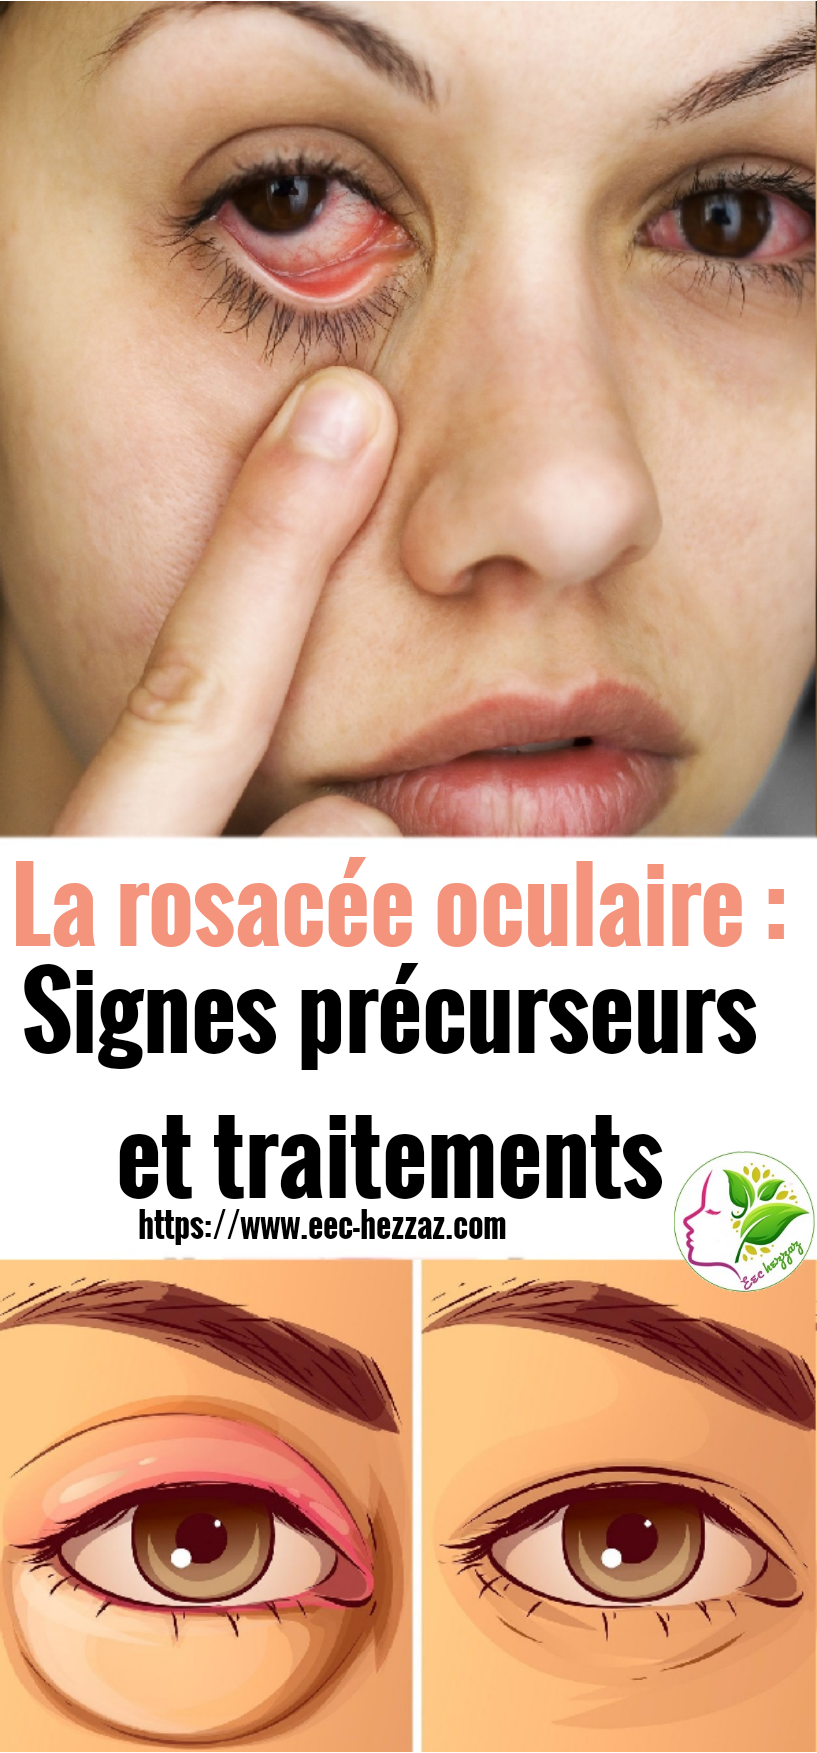 La rosacée oculaire : Signes précurseurs et traitements